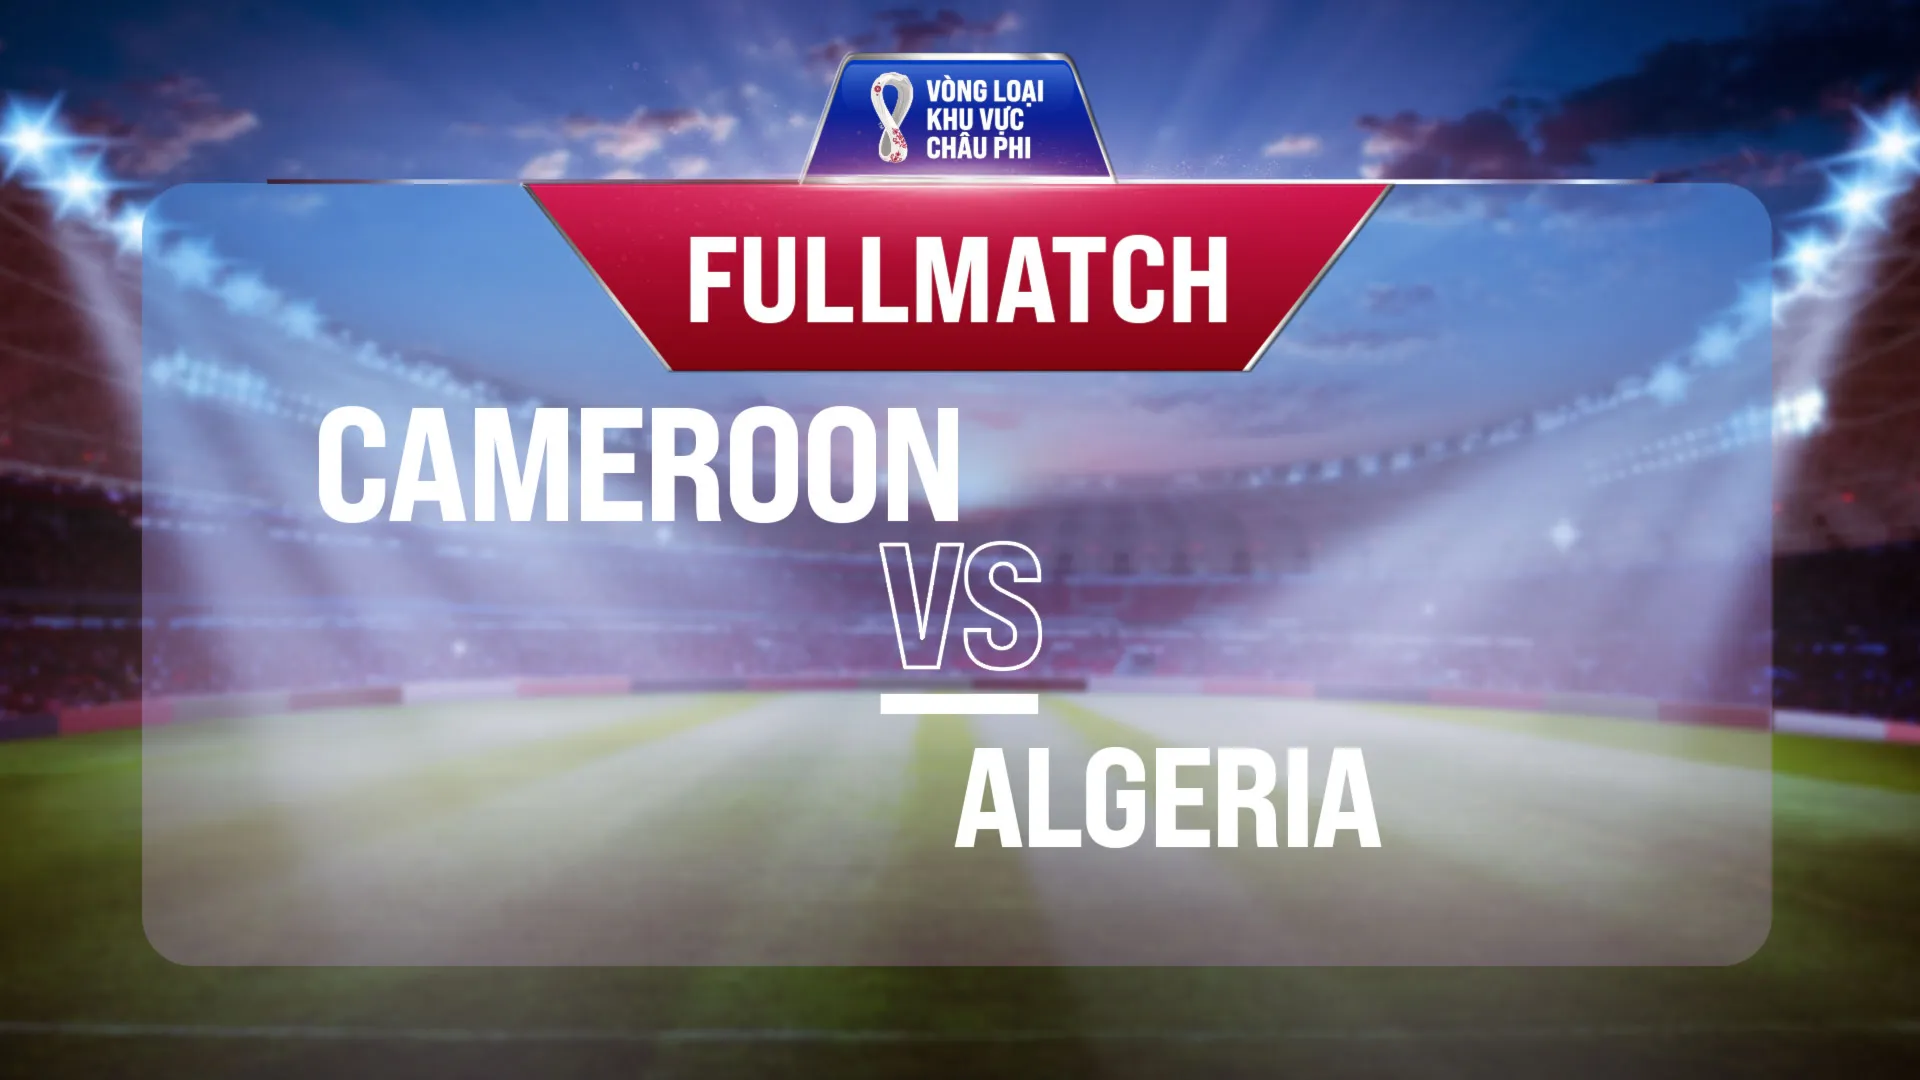 Full match Cameroon - Algeria (Lượt trận 1 Vòng Loại thứ 3 World Cup 2022 - Khu vực châu Phi)